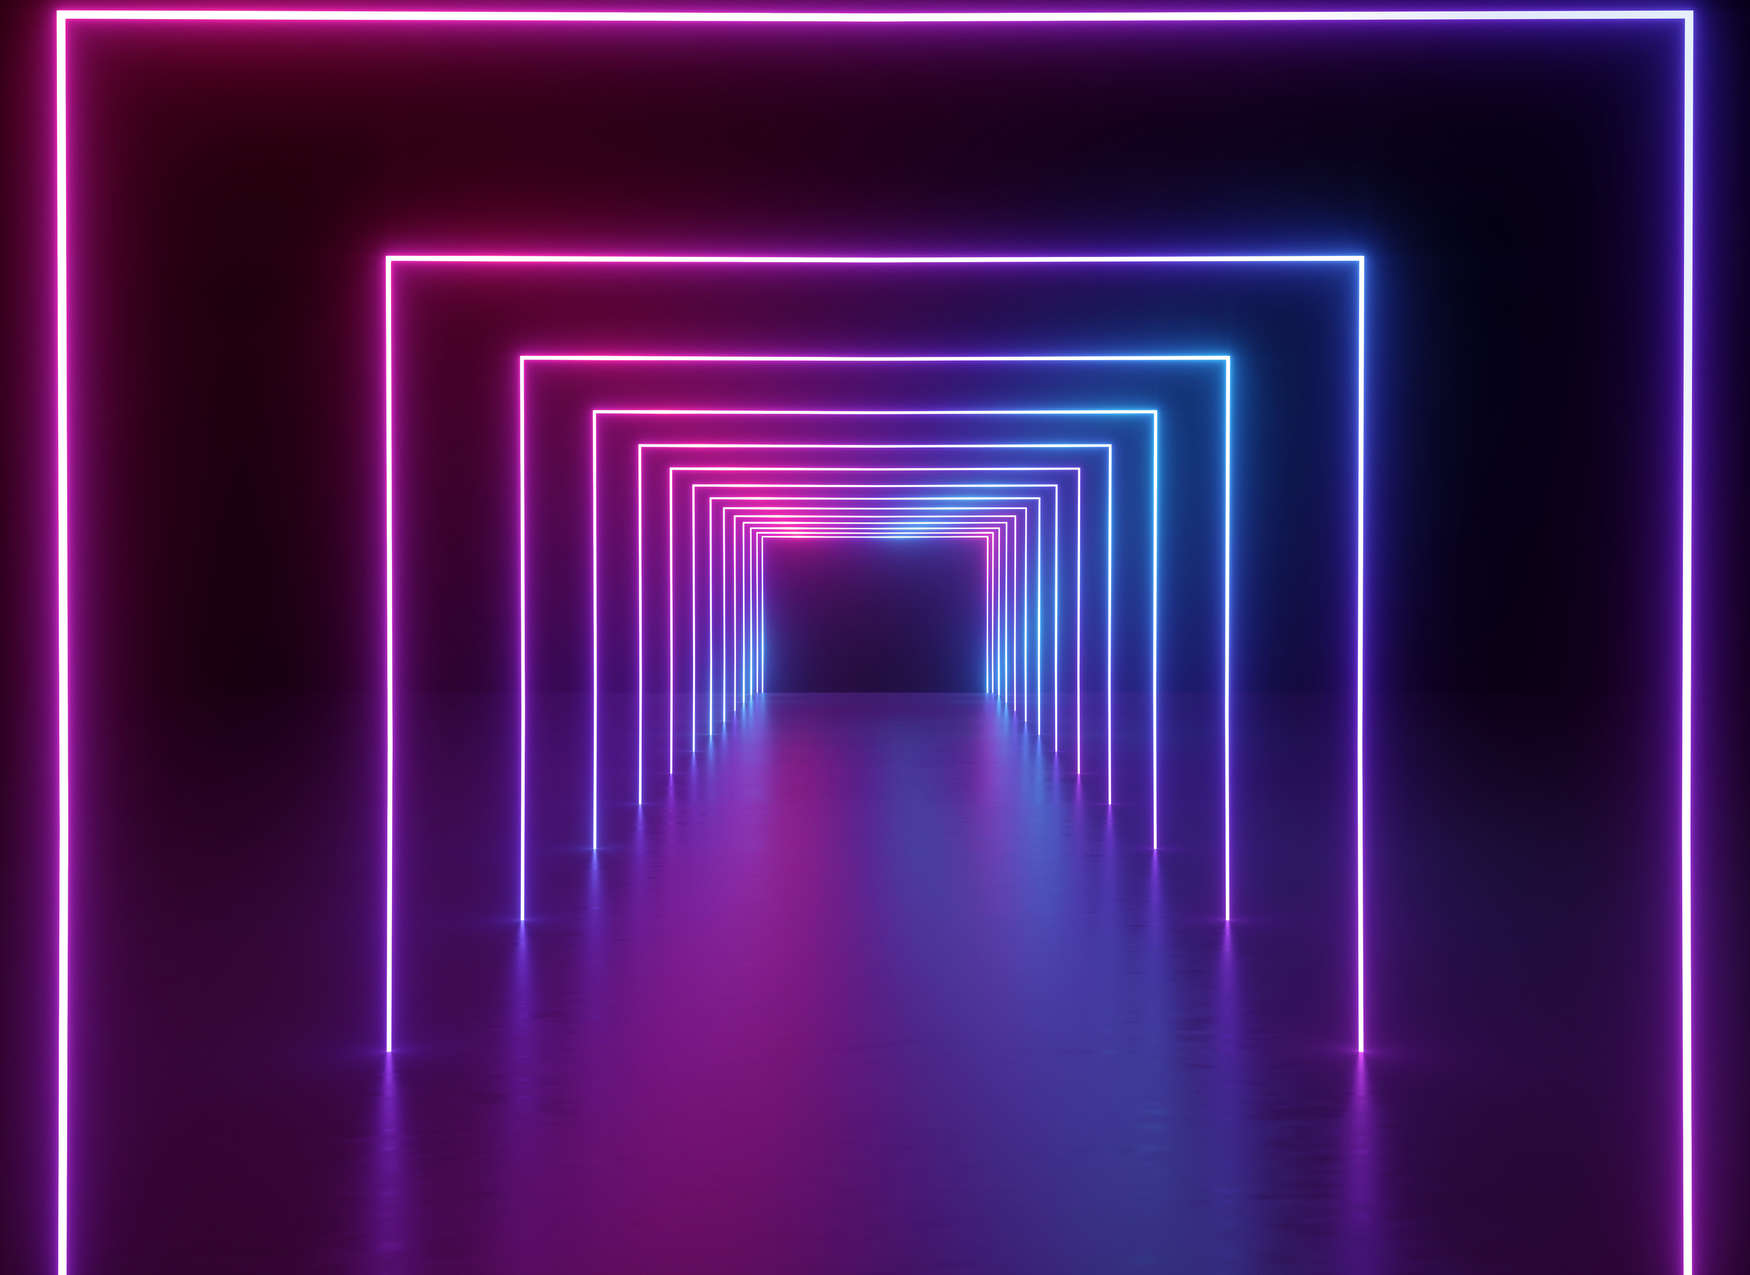             Papier peint panoramique Salle avec long couloir Couleurs LED - Violet, bleu, néon
        